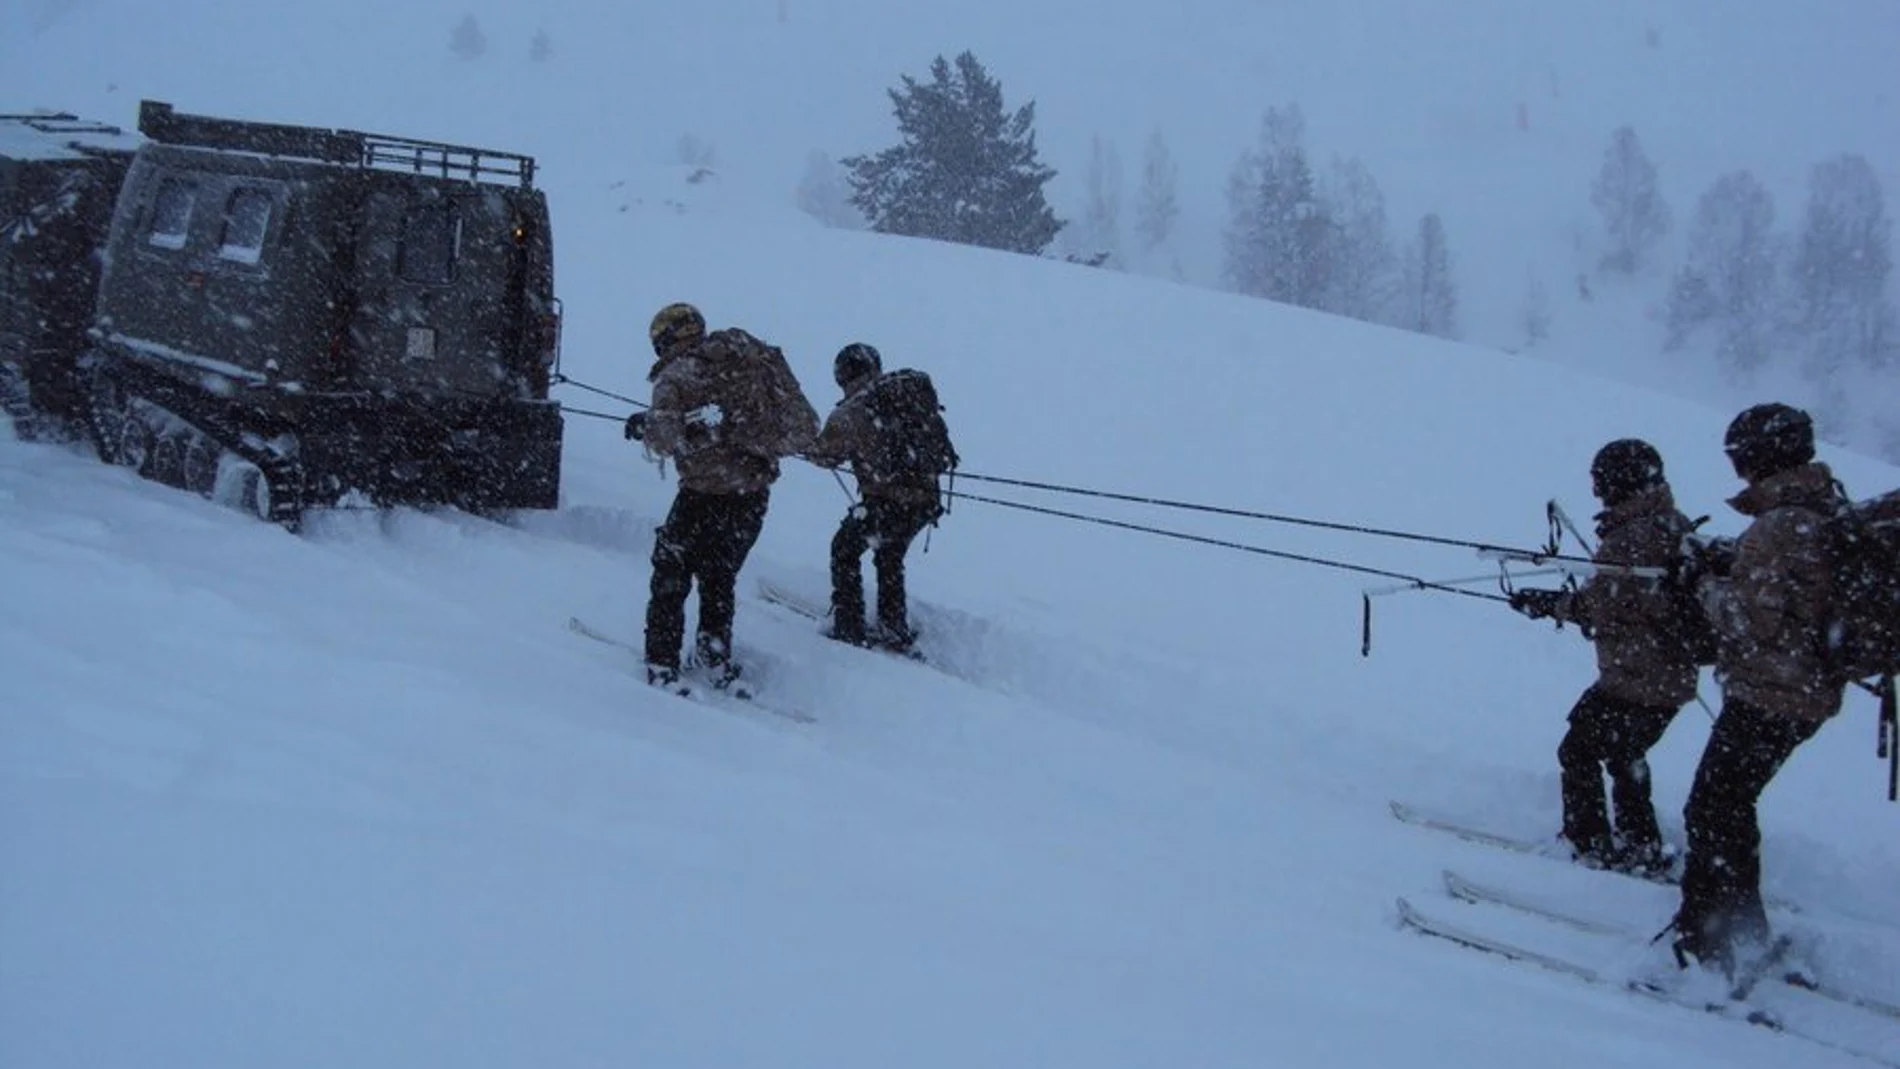 Imagen de varios militares en la nieve